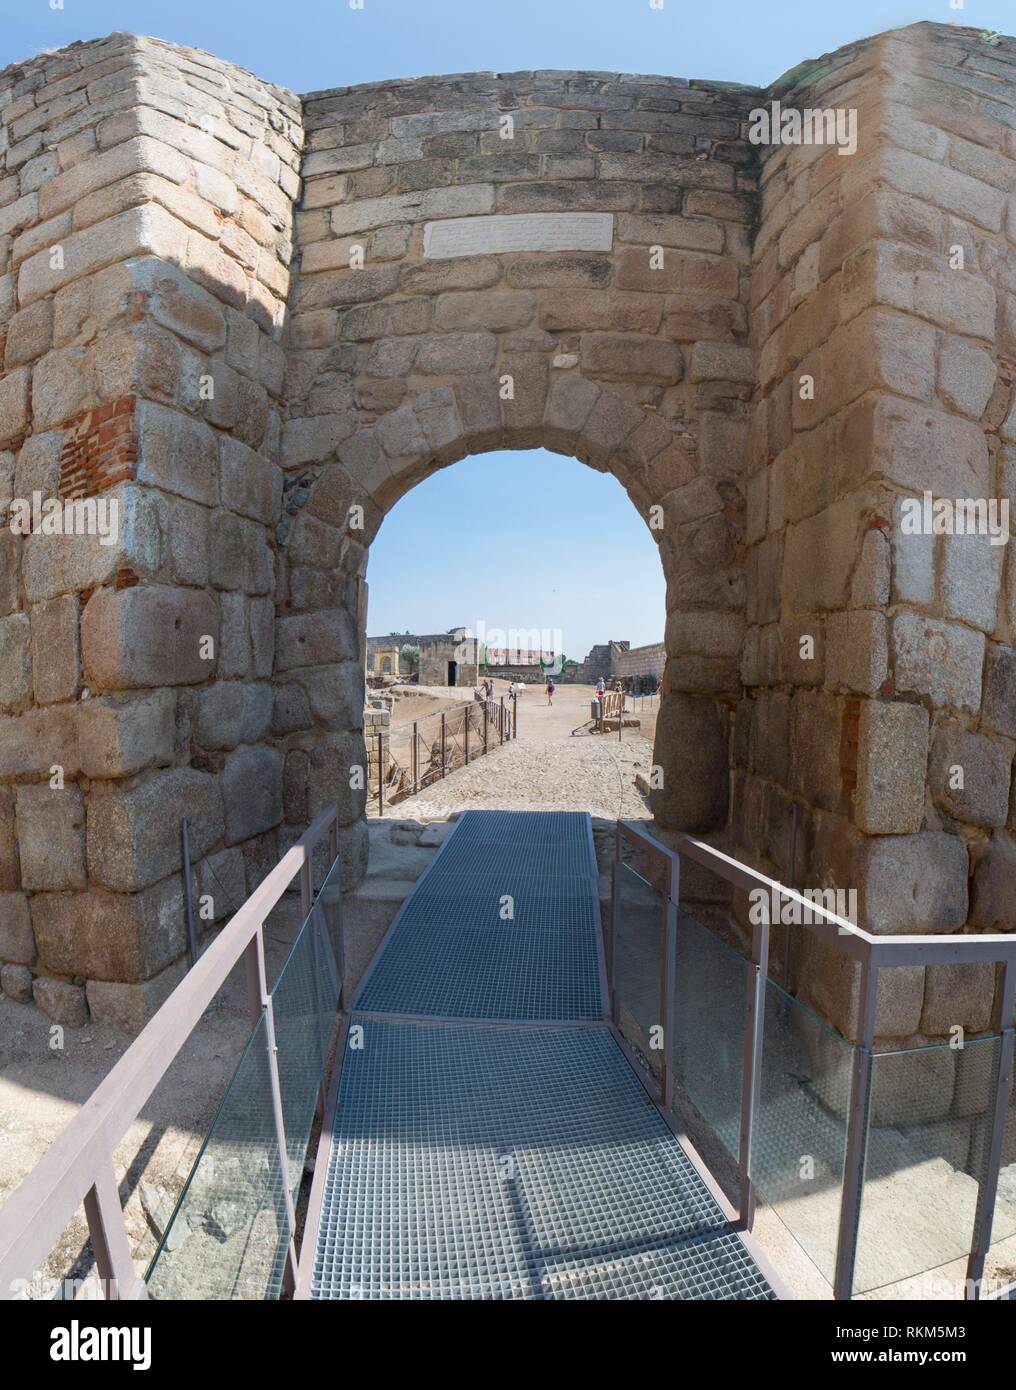 La entrada principal de la alcazaba de Mérida, fortificación musulmana del siglo IX, Badajoz, España. Foto de stock